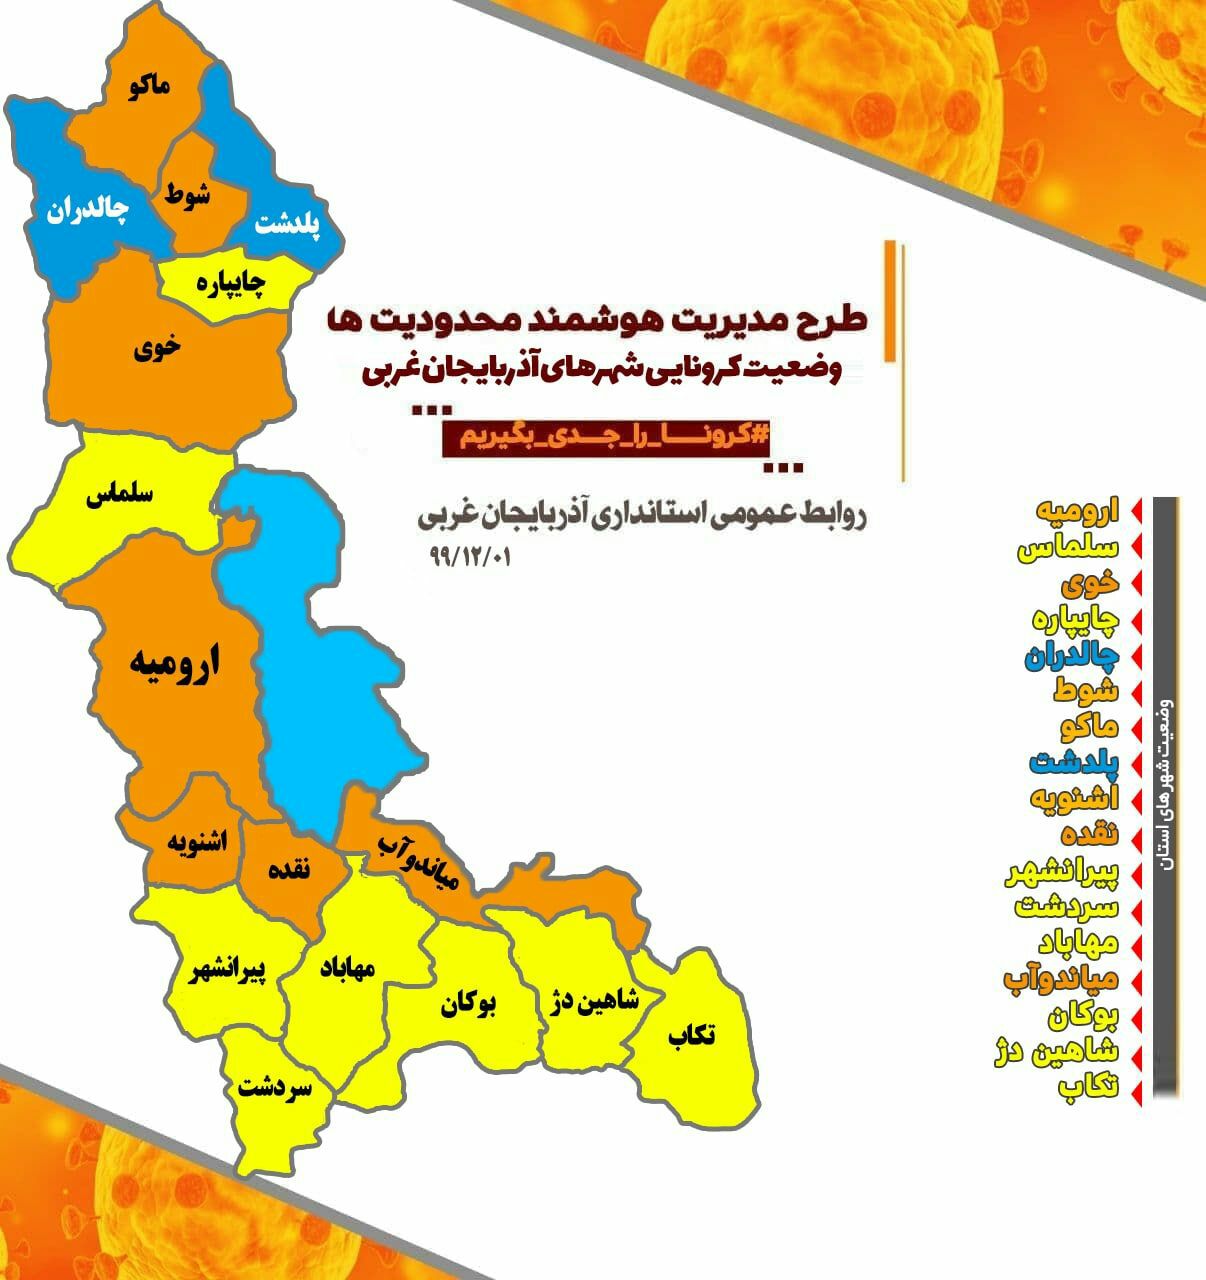 وضعیت شکننده کرونا در آذربایجان غربی